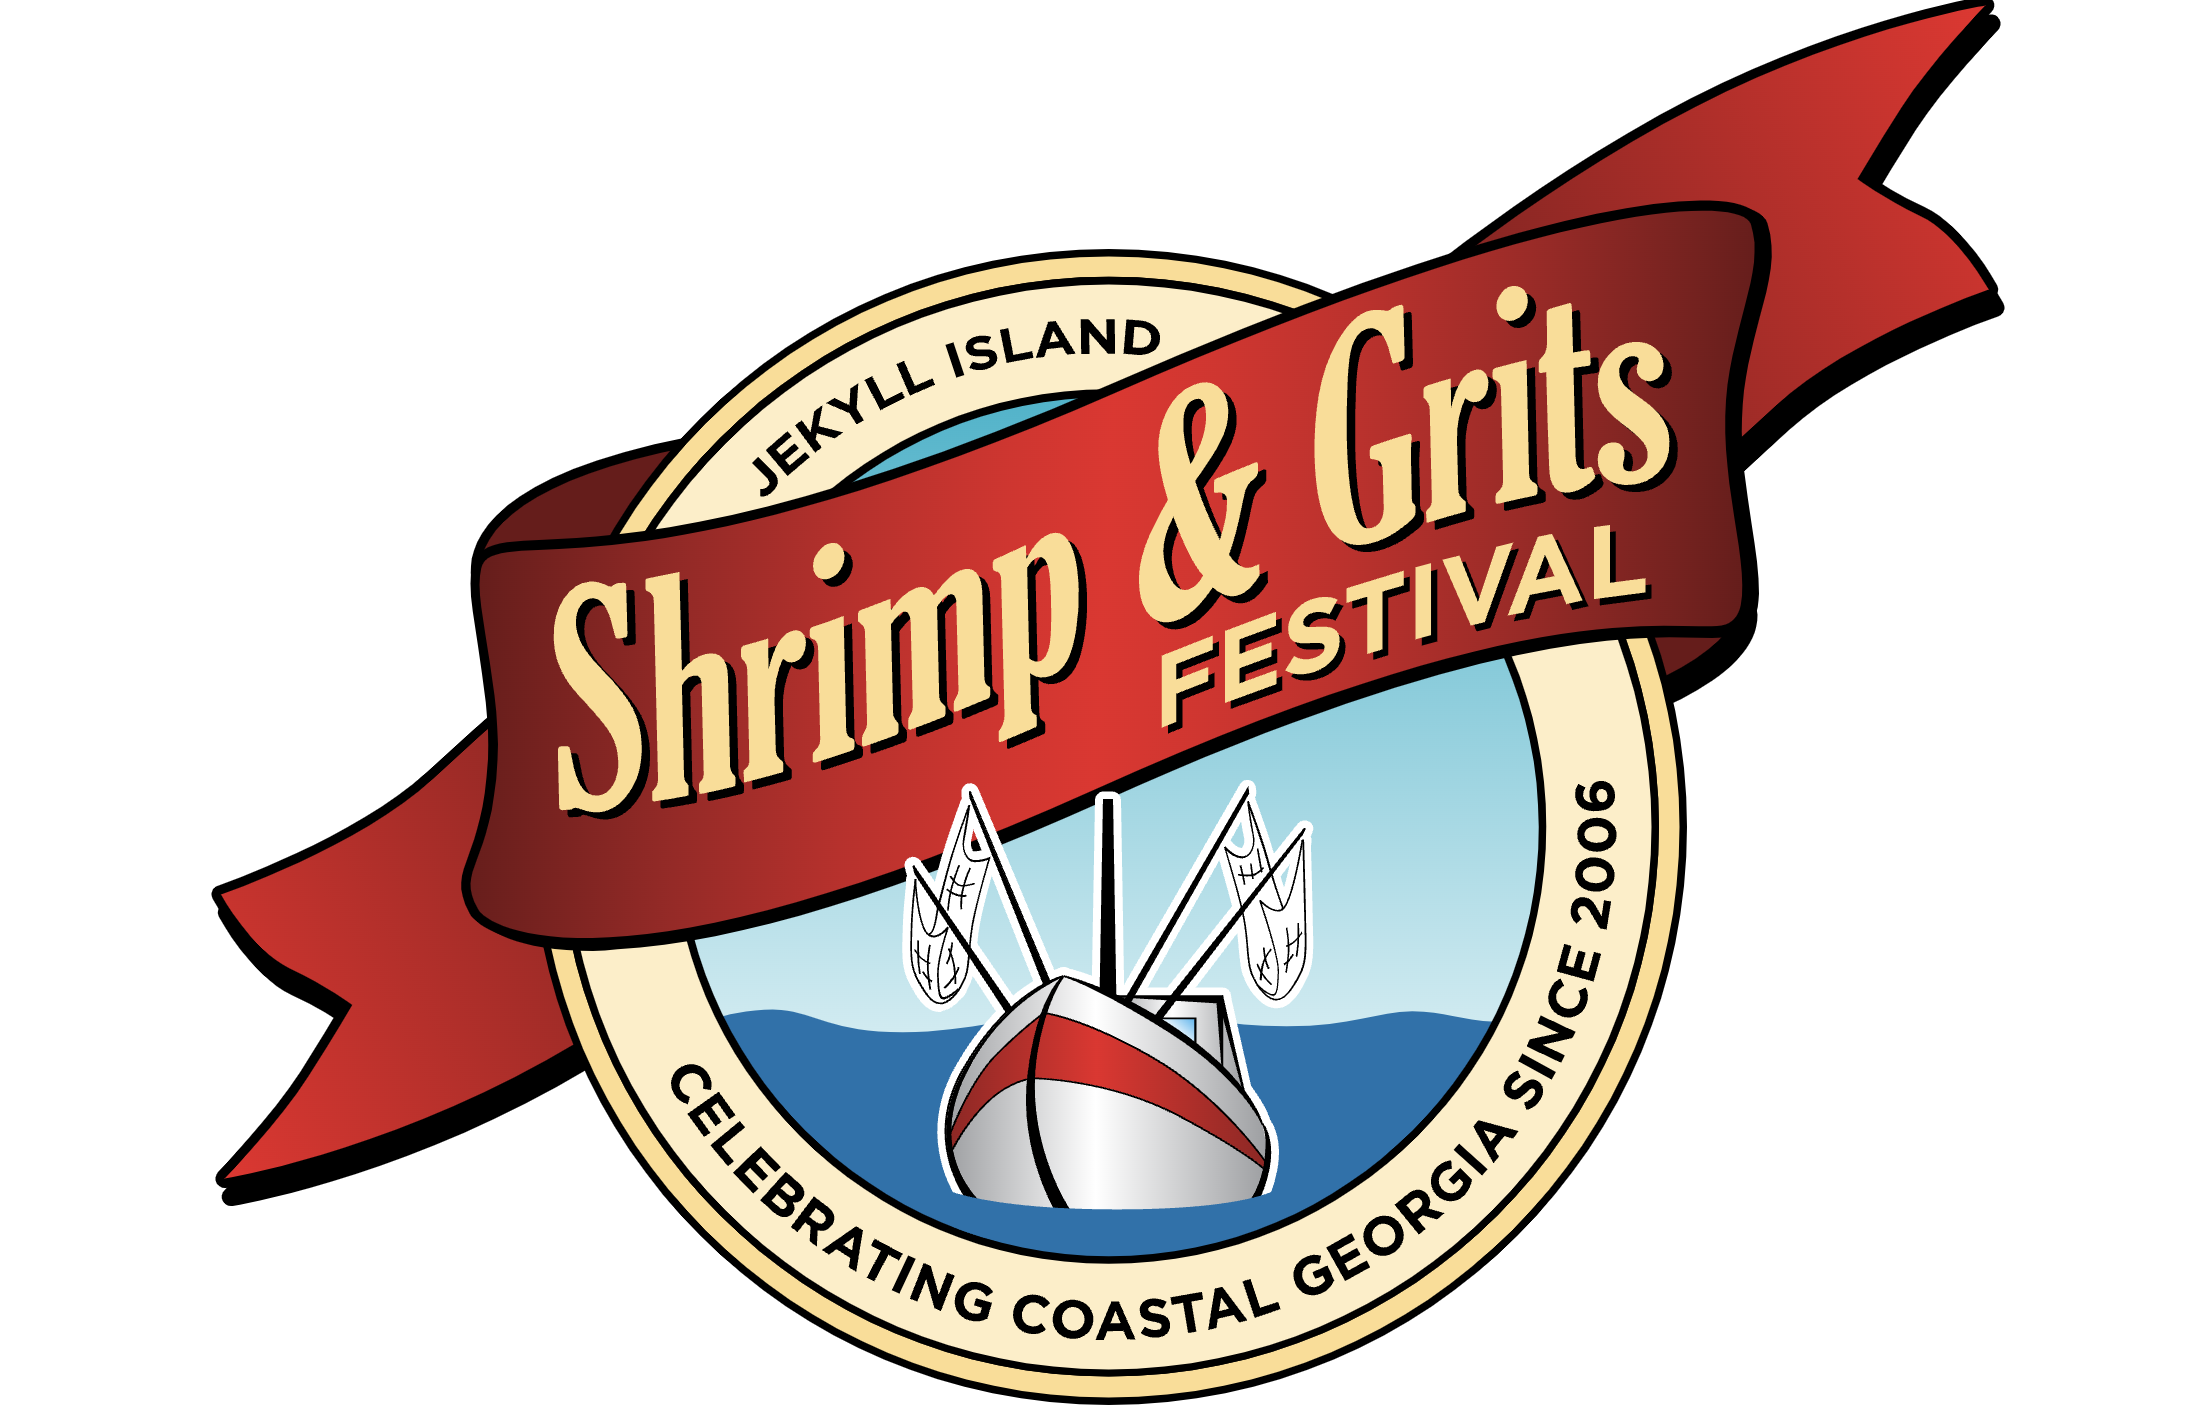 Shrimp & Grits Festival